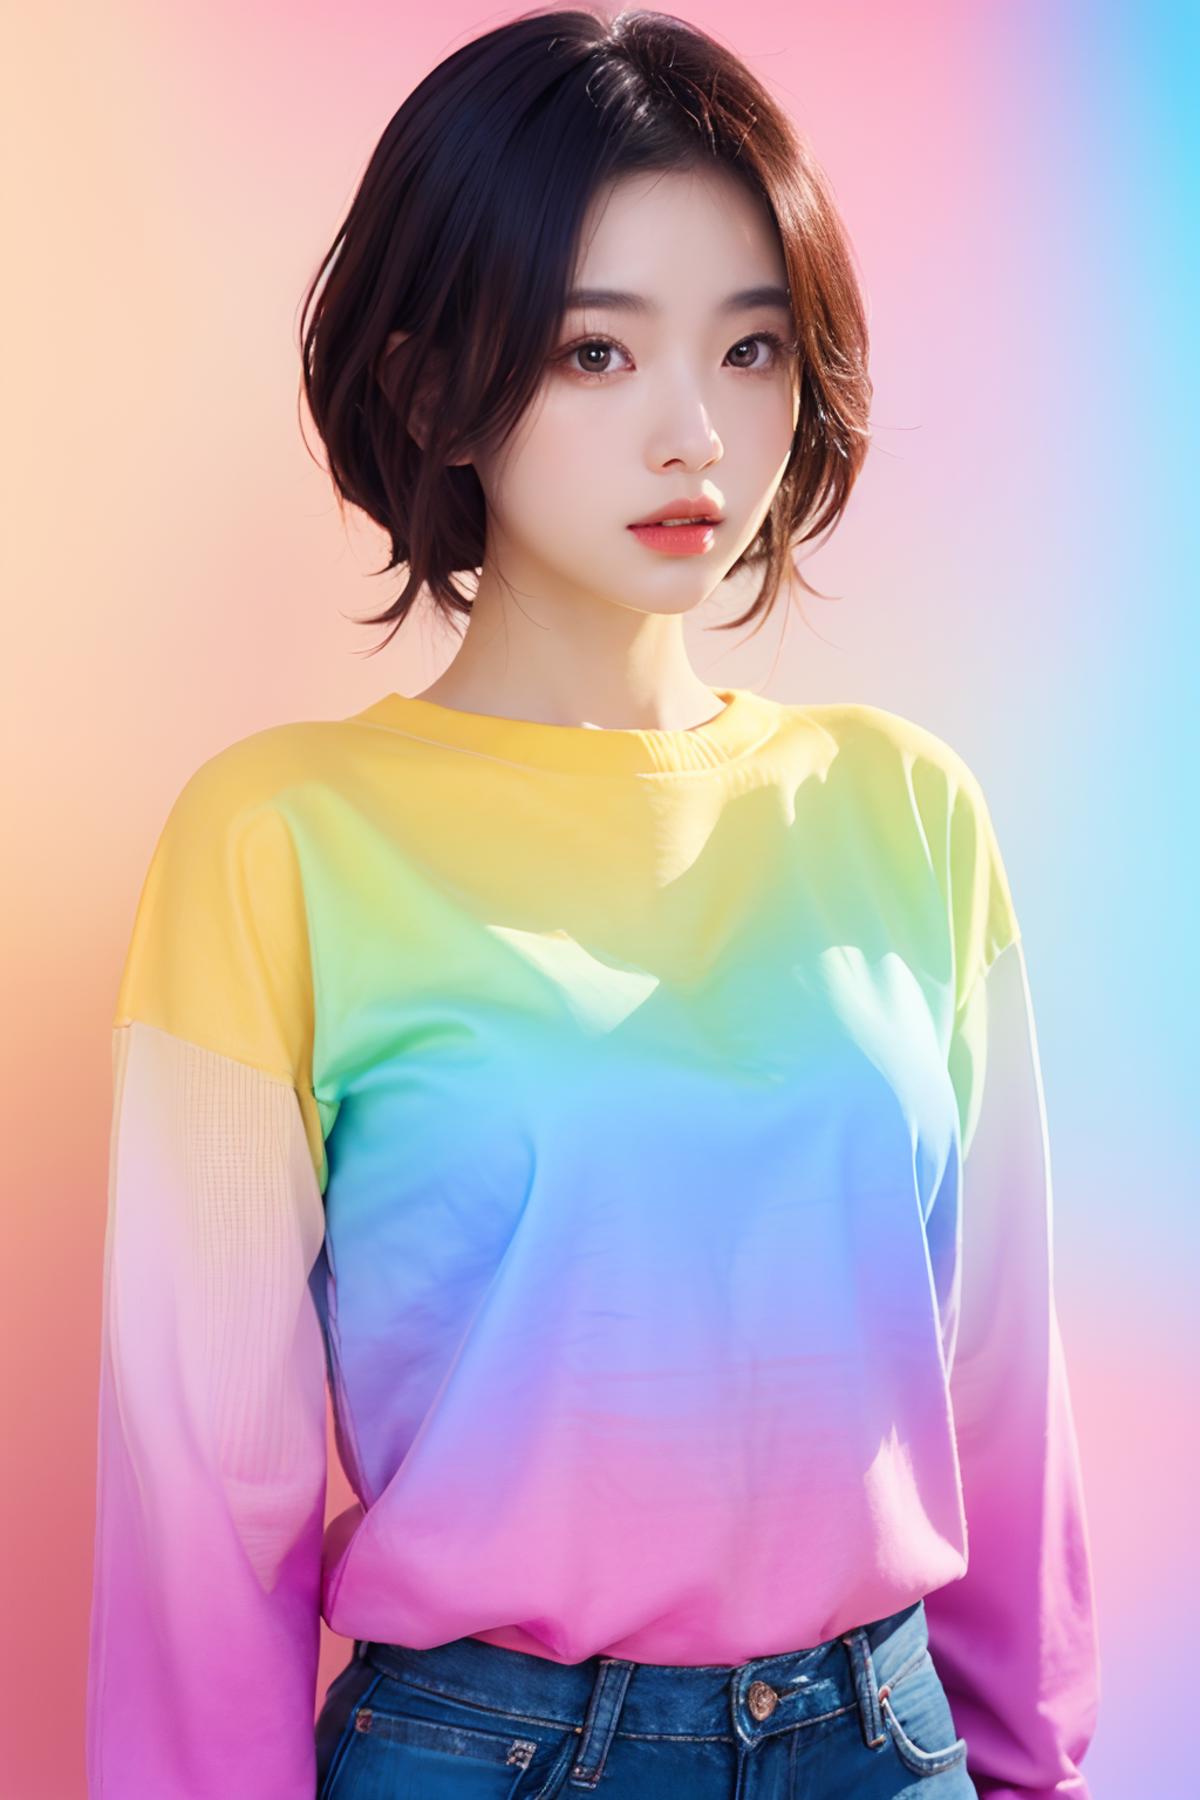 多彩渐变/Colorful gradient image by 779452139118